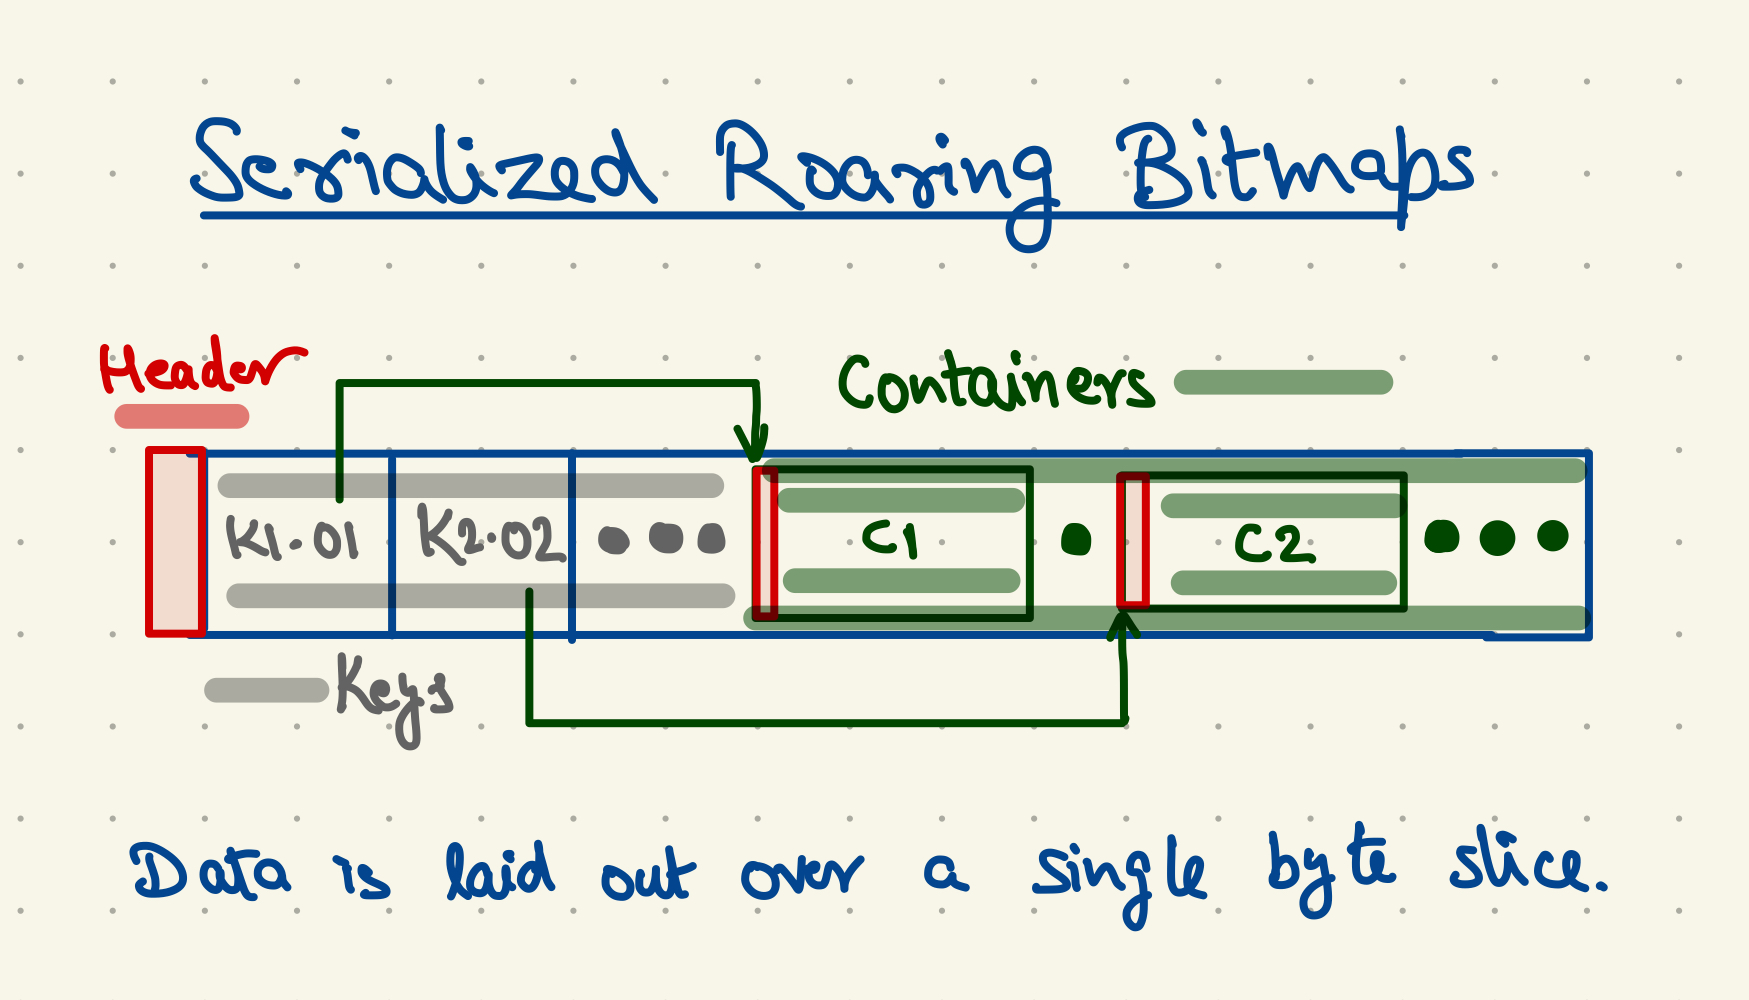 Serialized Roaring Bitmaps